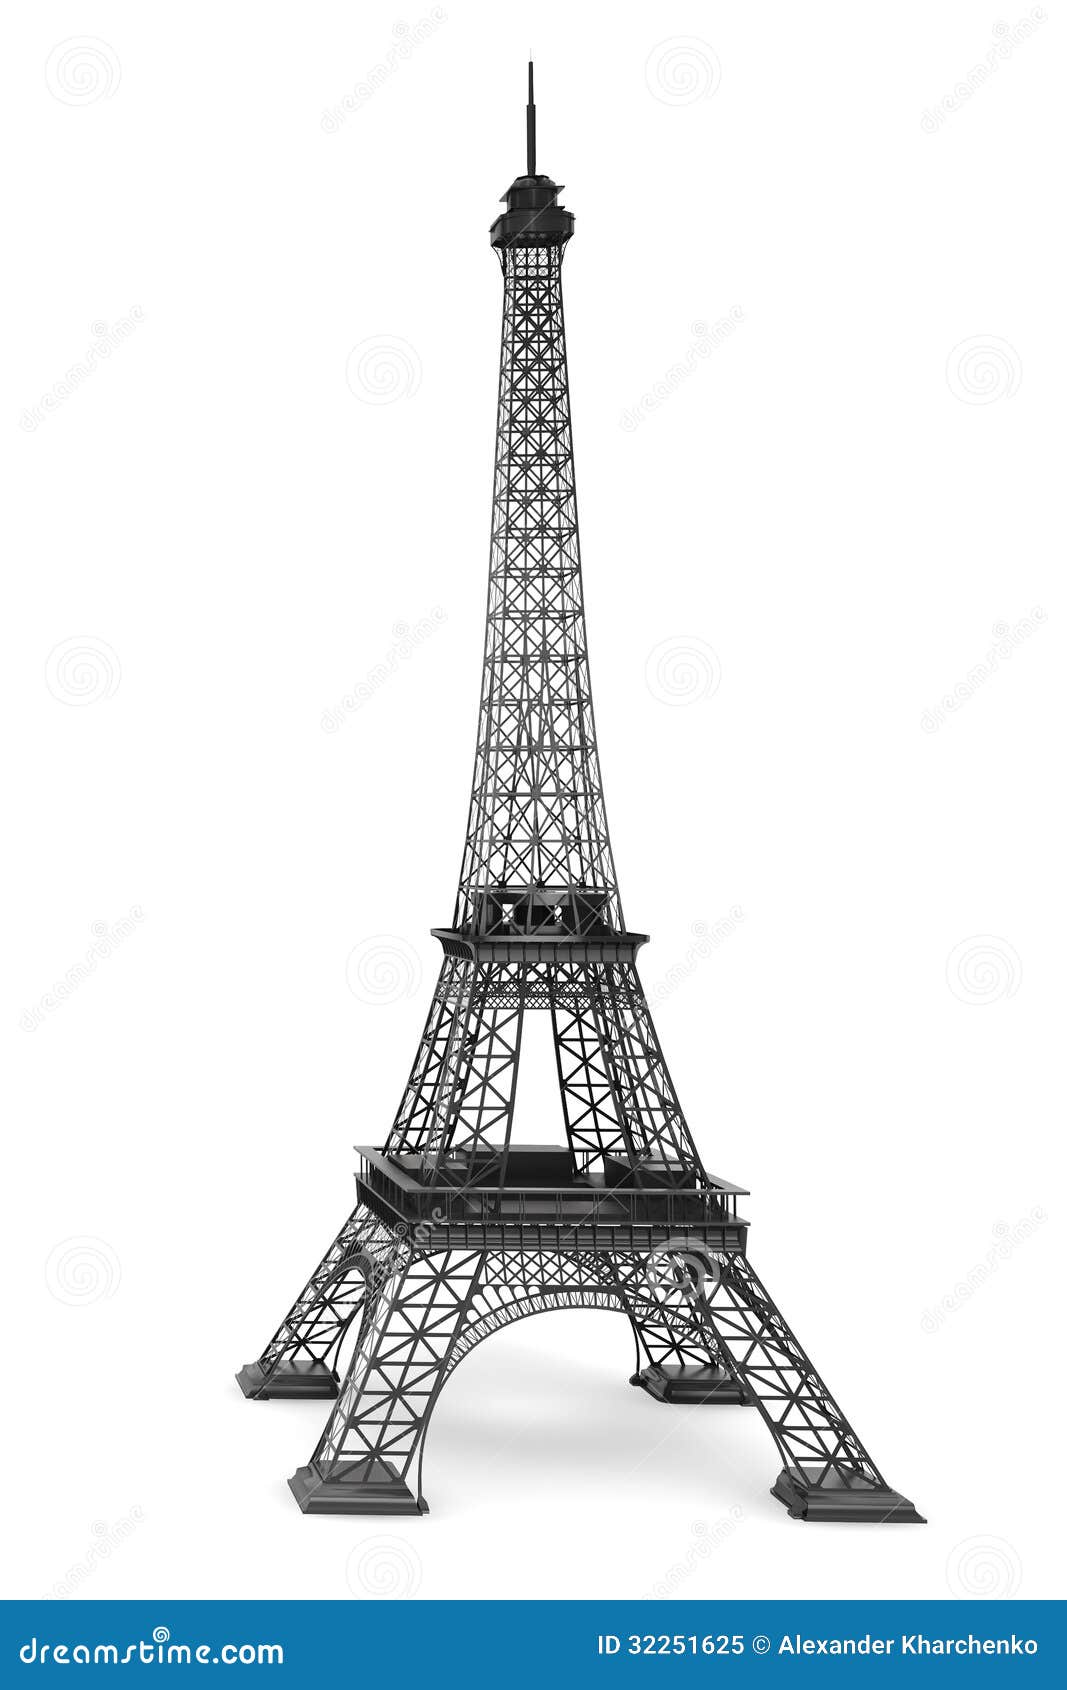 Tour Eiffel 3d Stock Illustrations, Vecteurs, & Clipart – (1,591